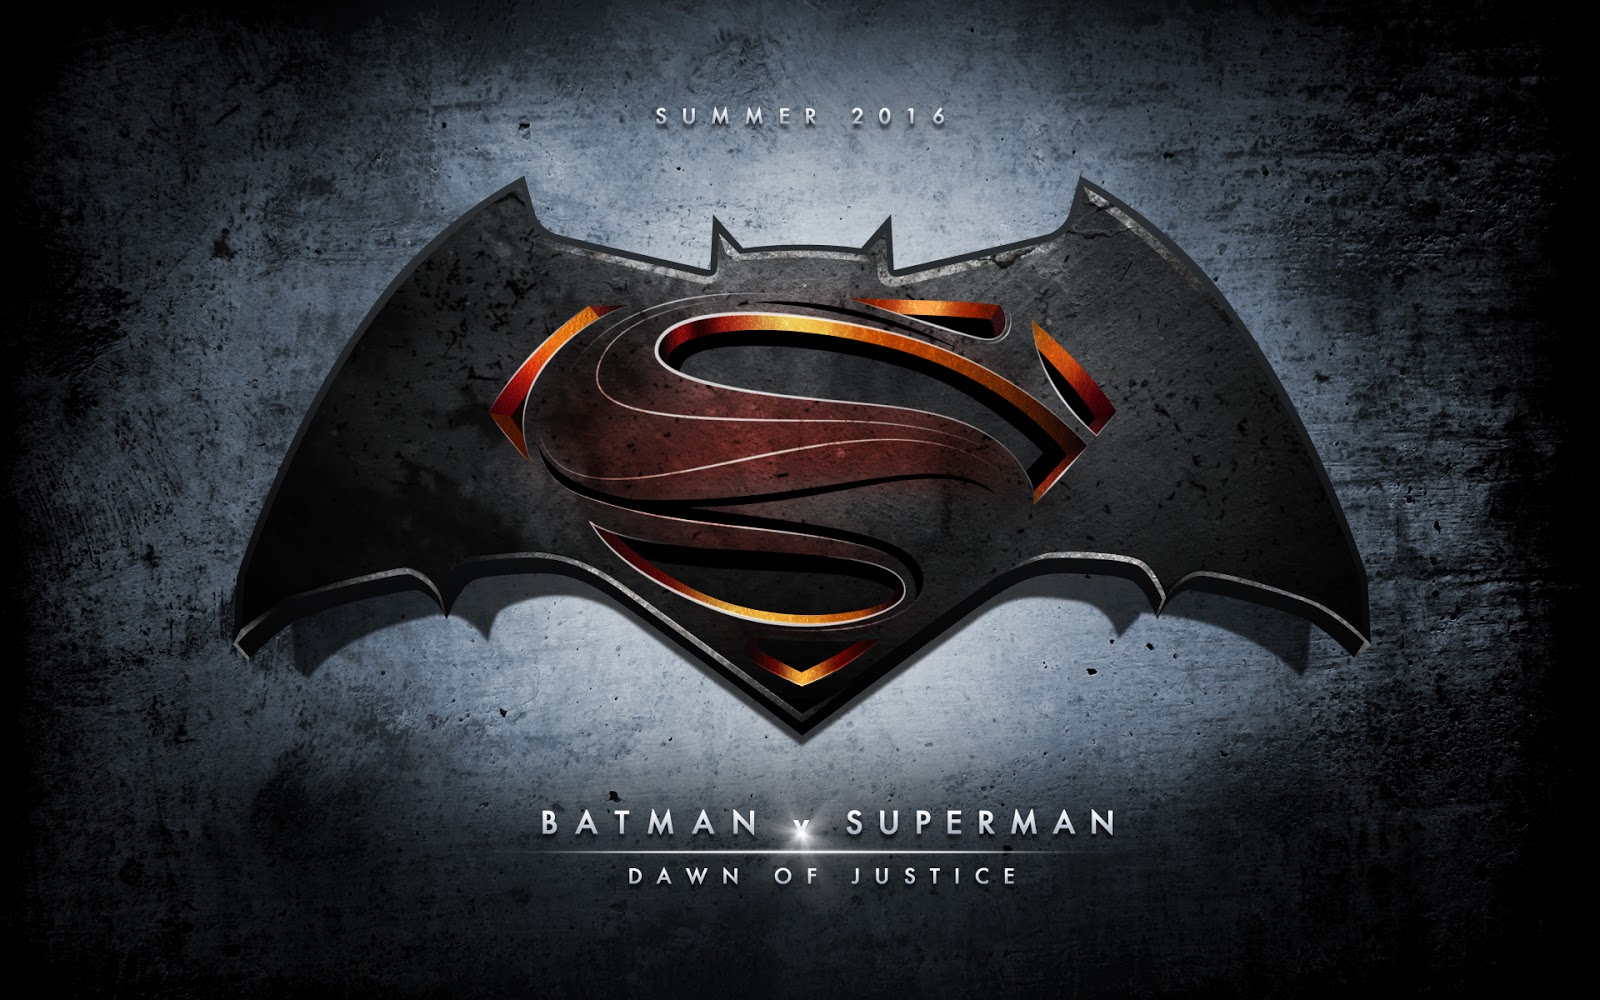 Comicrítico: BATMAN V SUPERMAN: Reveladas nuevas fotos y portada de revista